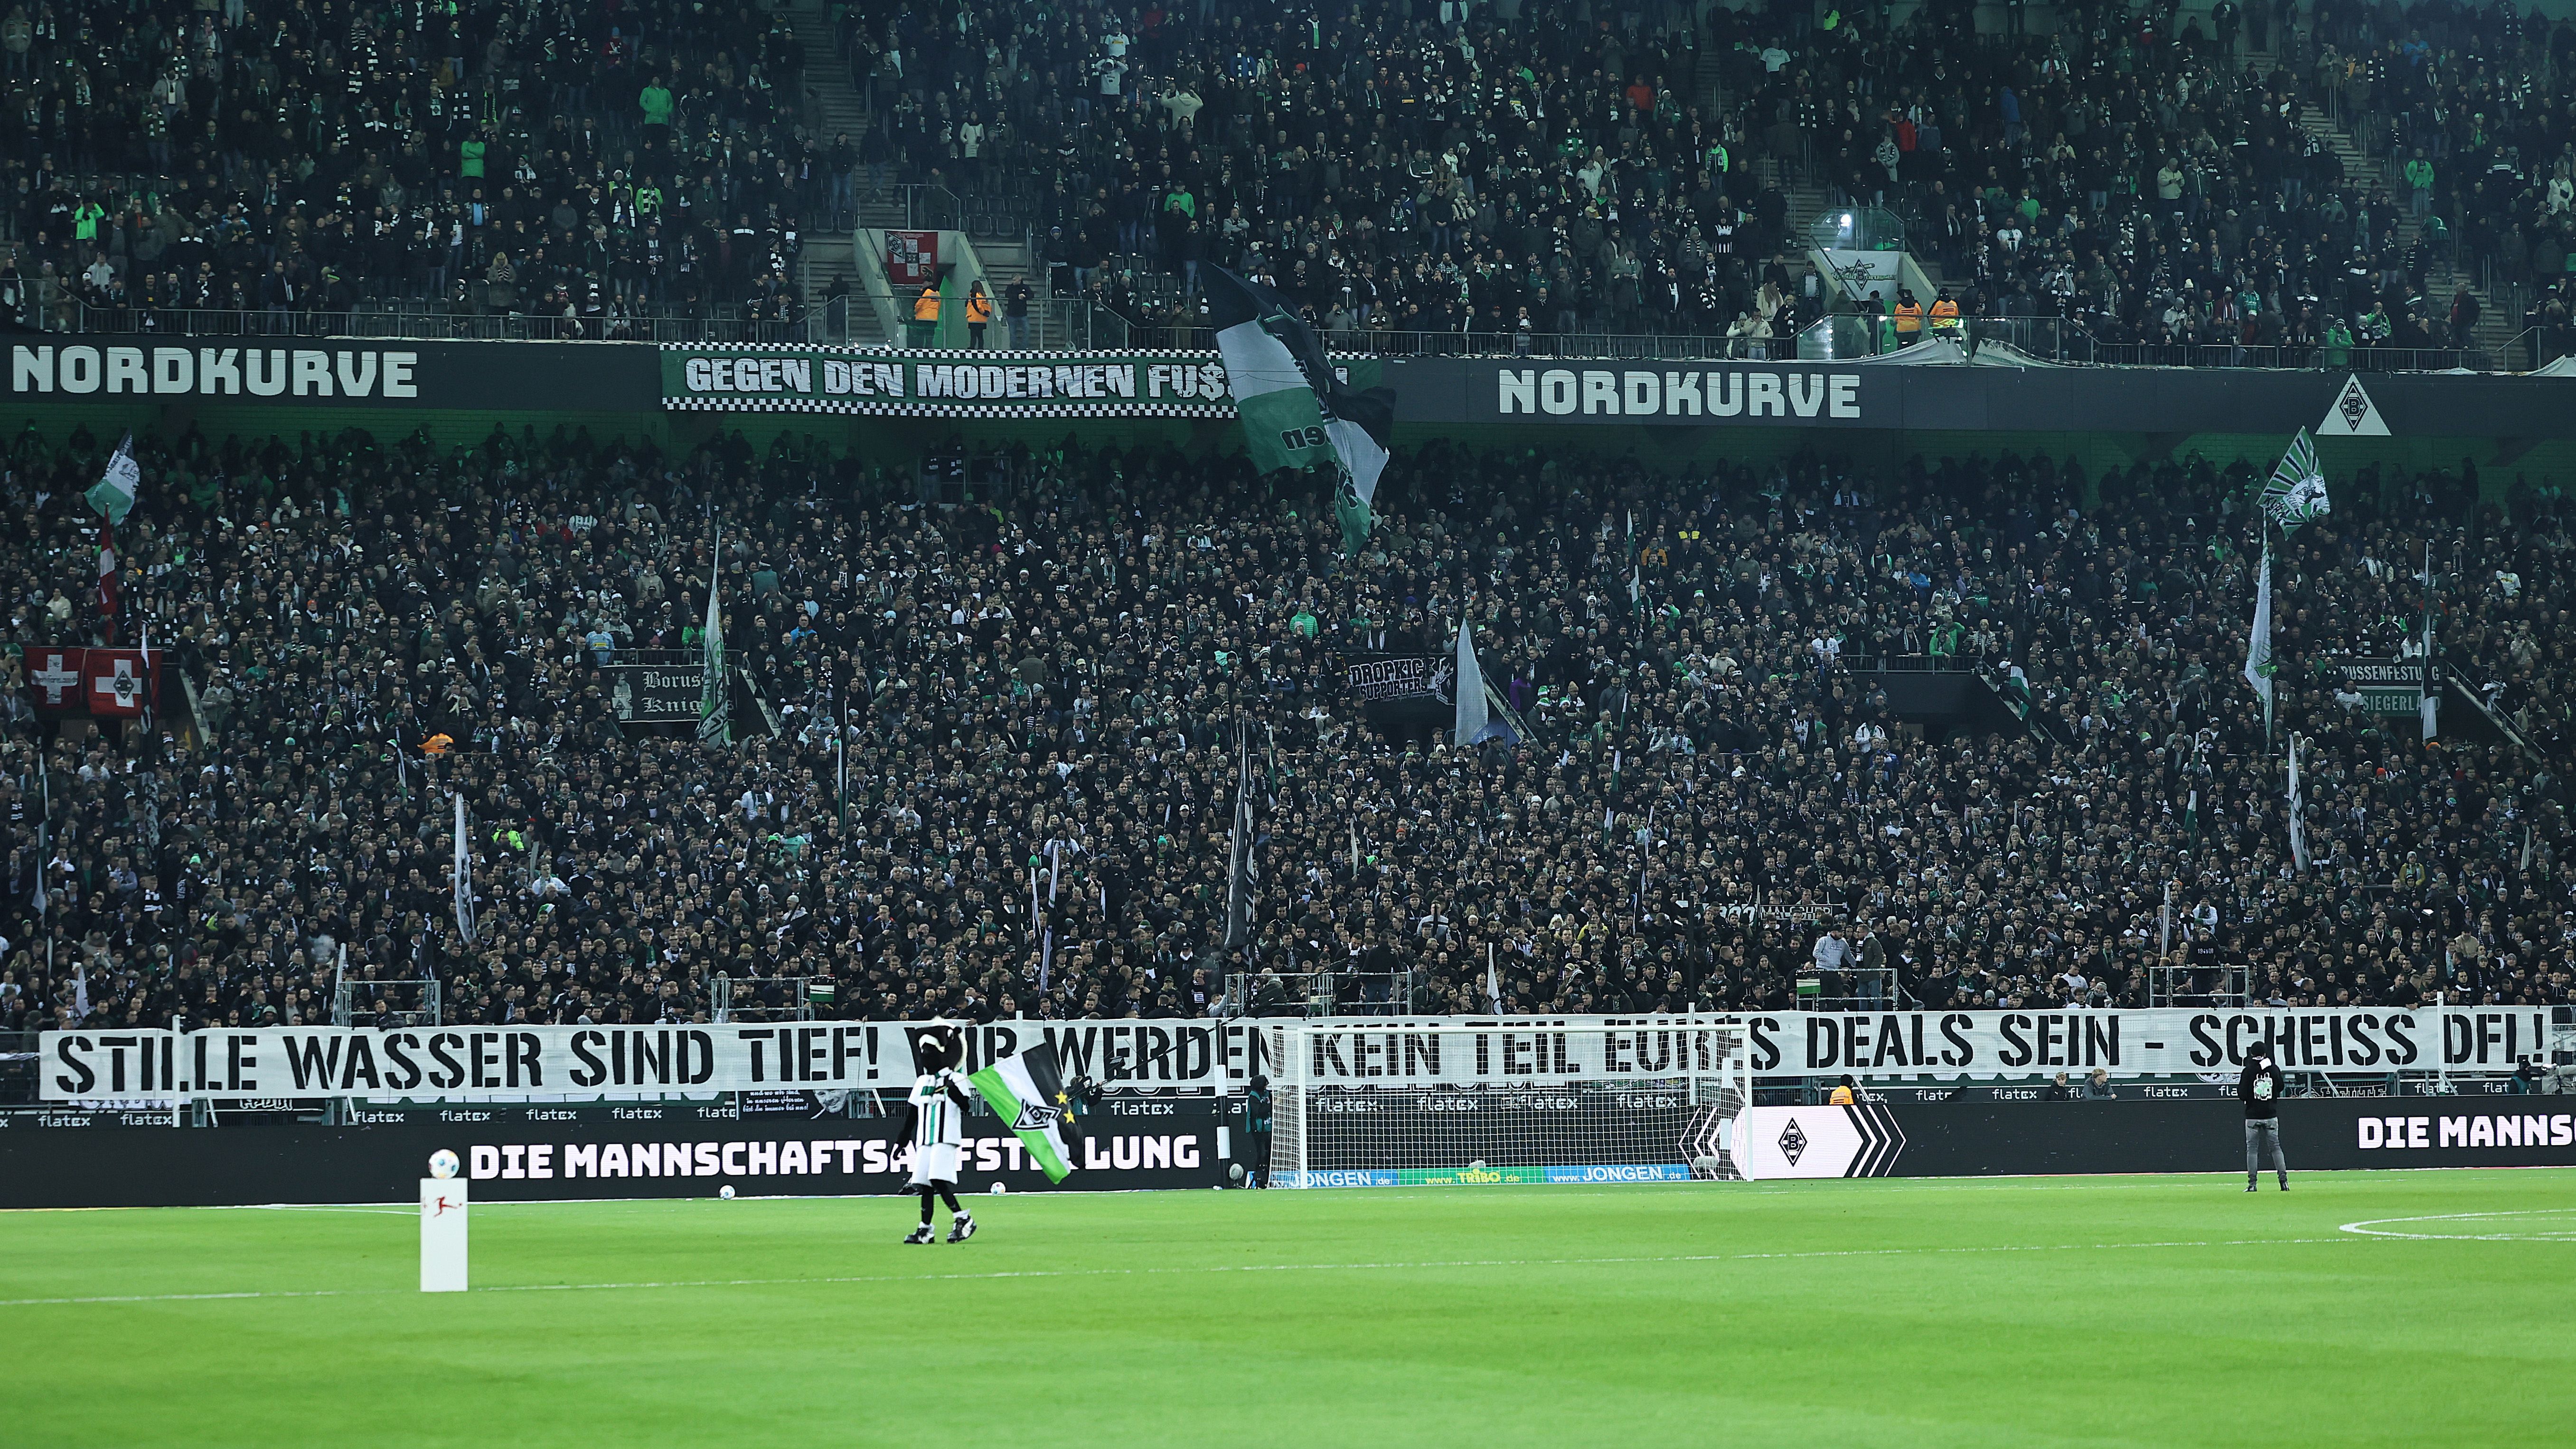 <strong>"Stille Wasser sind tief"</strong><br>Vor dem Bundesliga-Spiel gegen Werder Bremen gab es auch vonseiten der Gladbacher Fanszene eine klare Botschaft in Richtung DFL. "Stille Wasser sind tief. Wir werden kein Teil eures Deals sein - Scheiß DFL!"